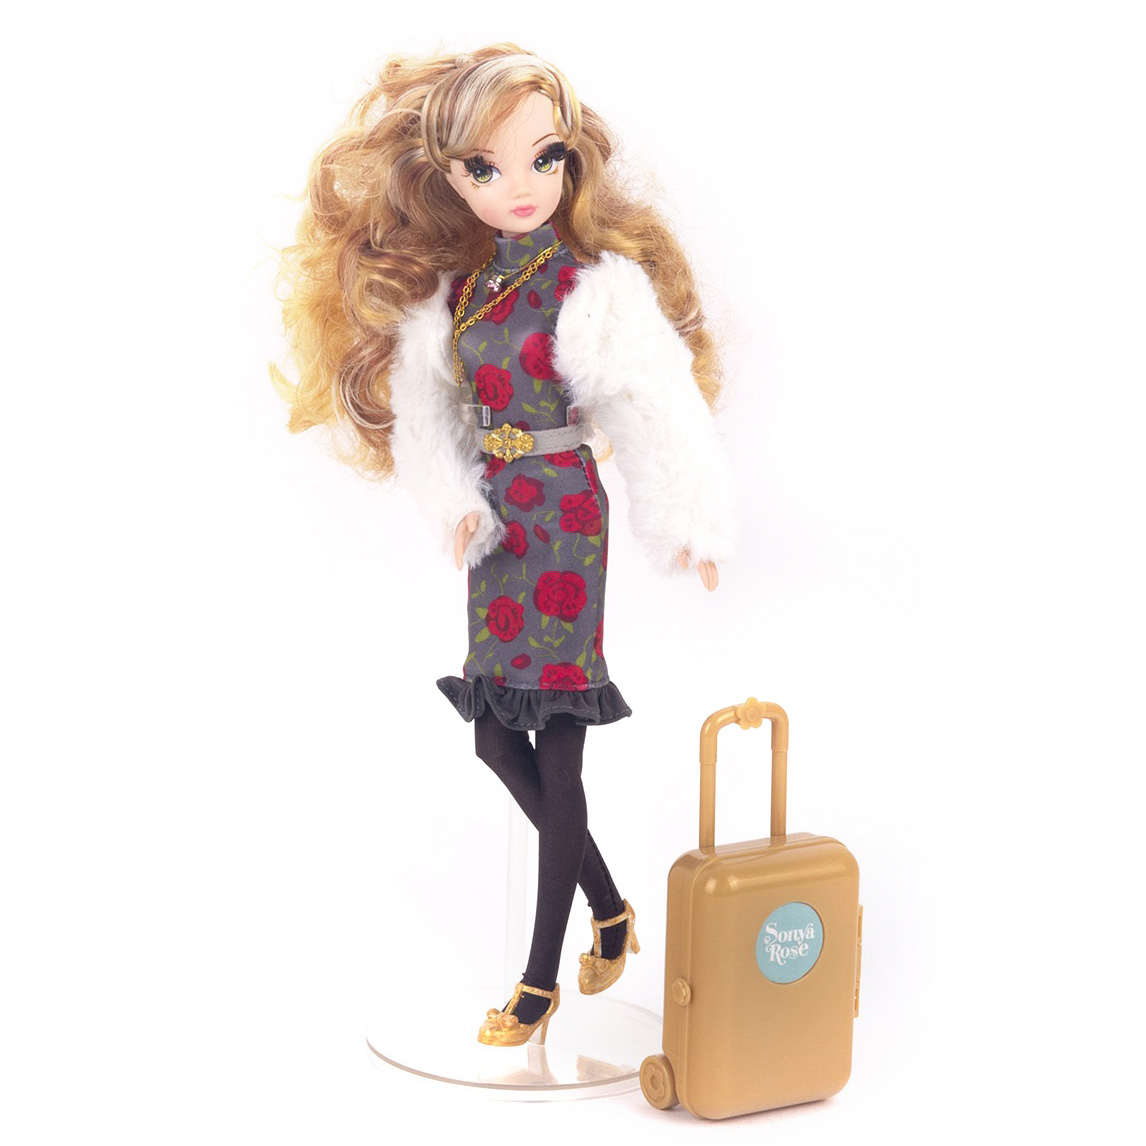 Кукла Sonya Rose R4421N серия "Daily collection" Путешествие в Италию - Магнитогорск 